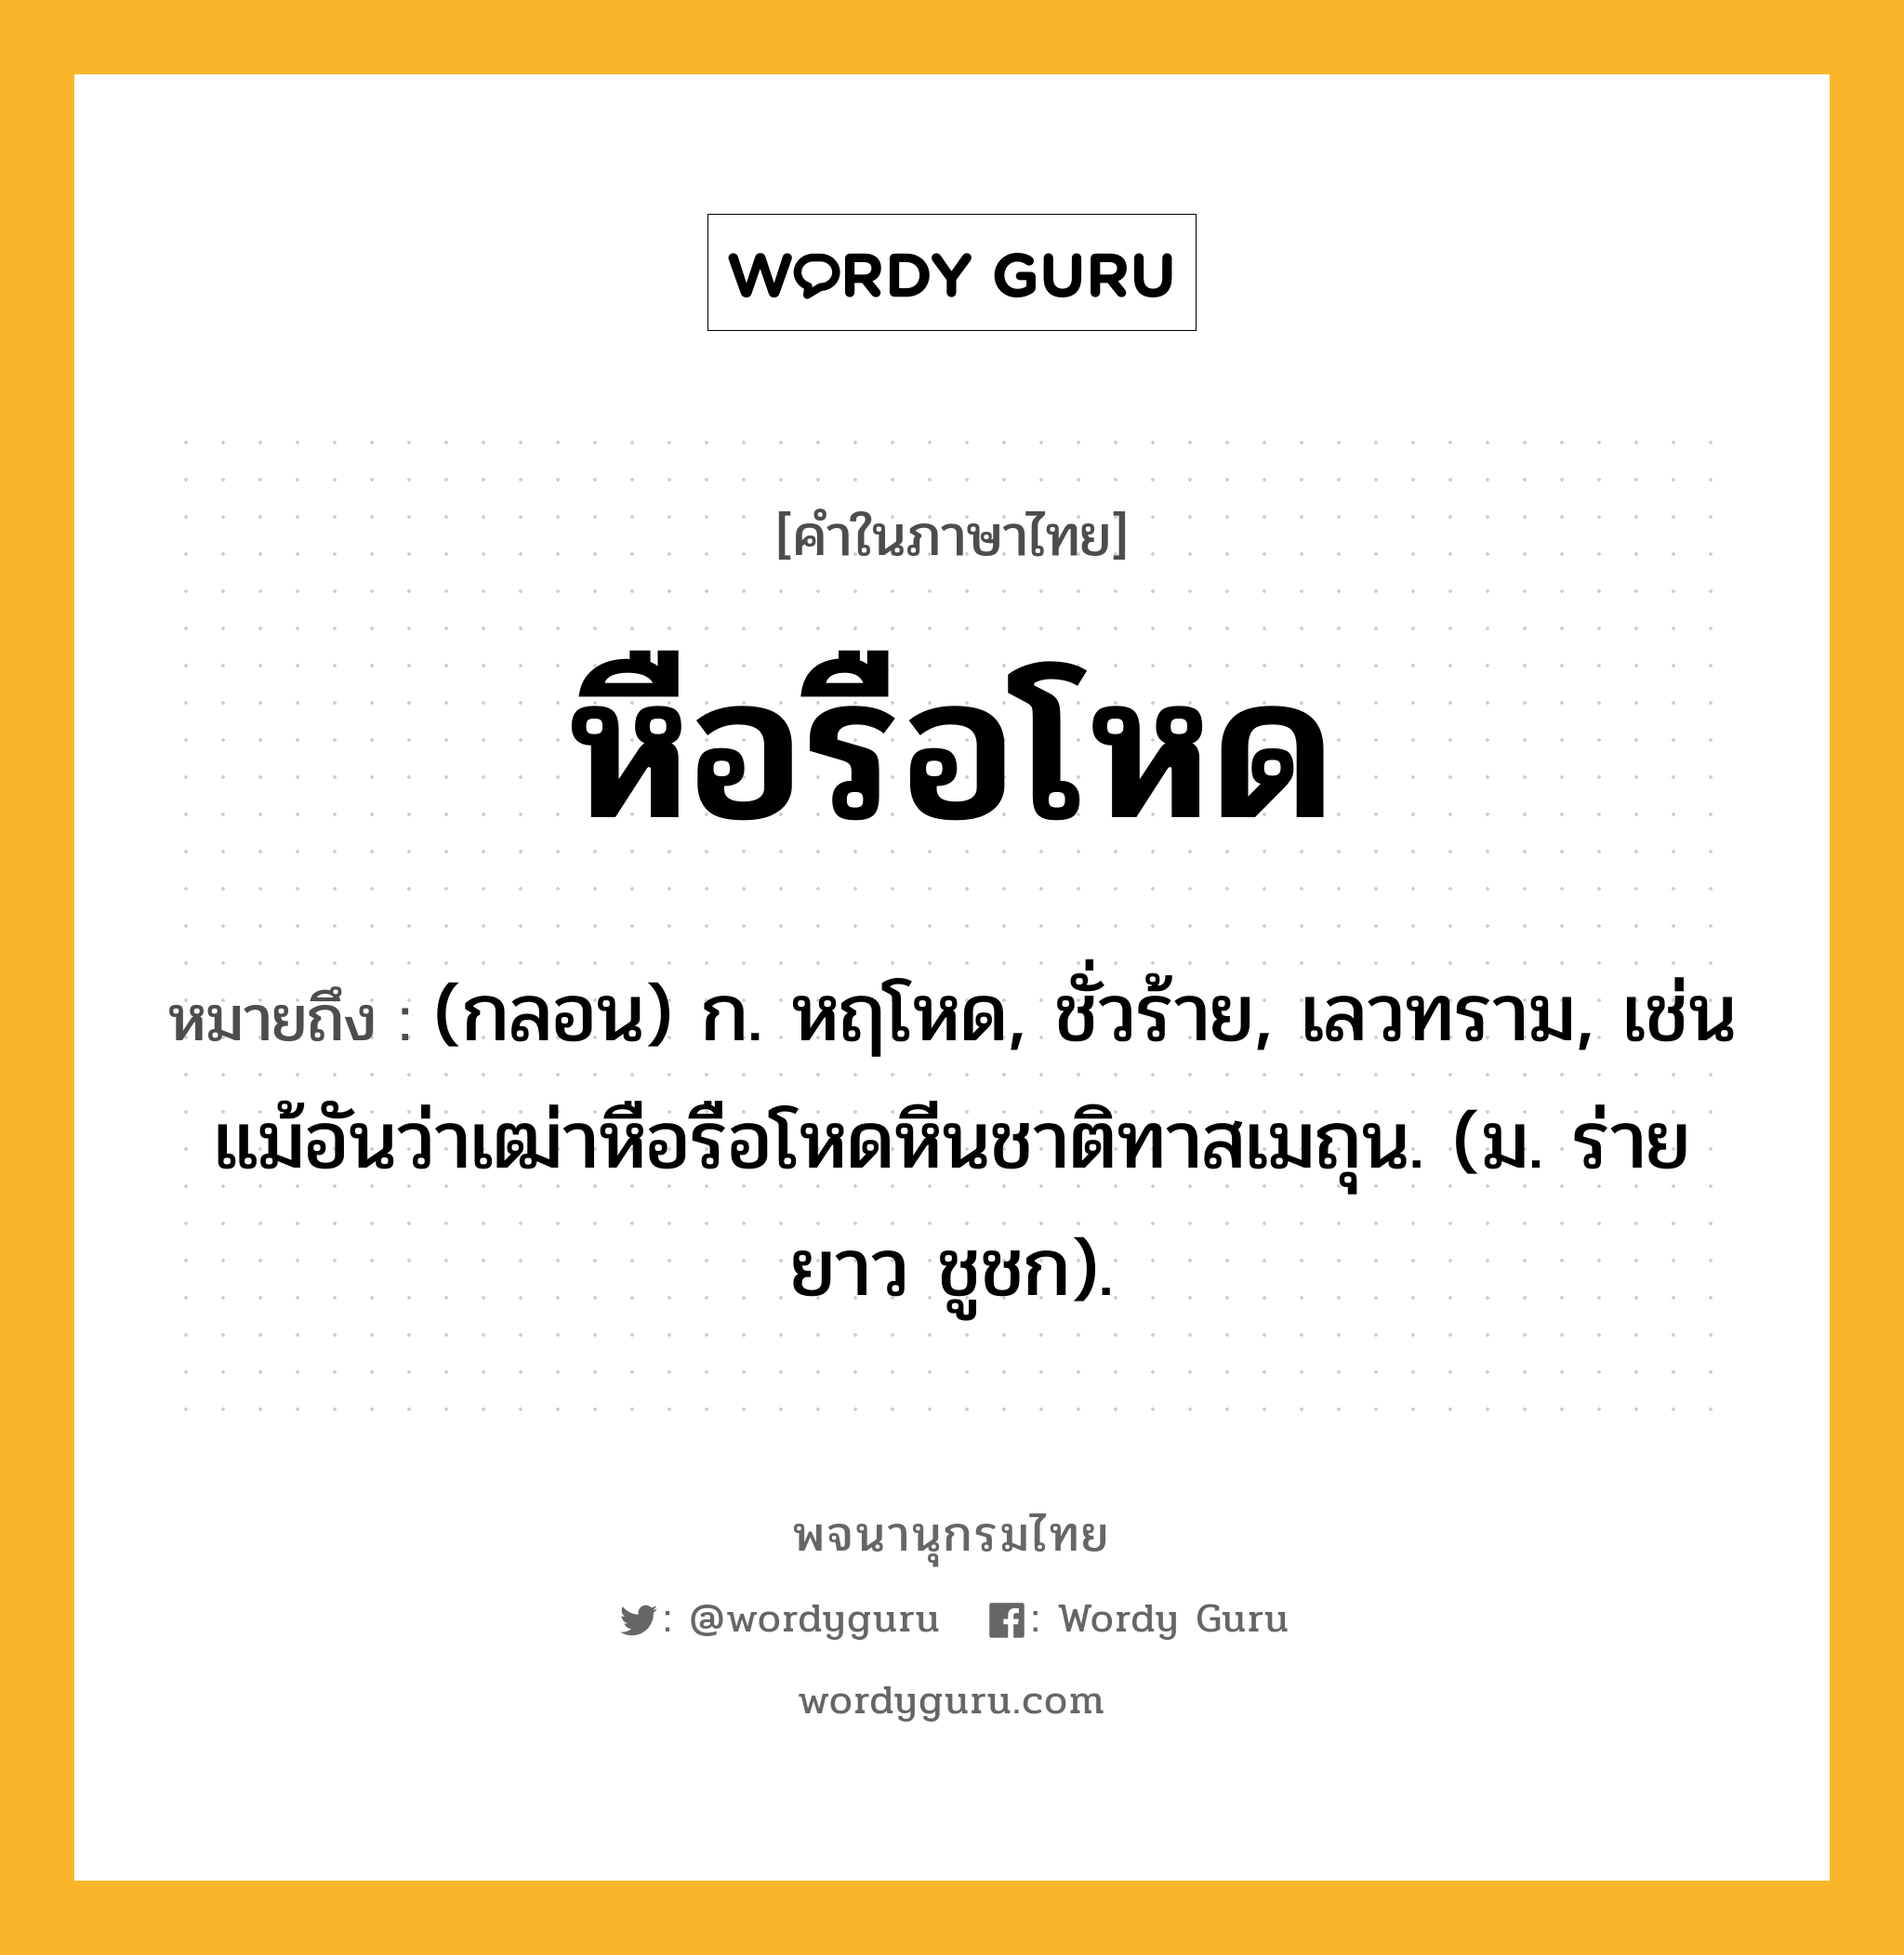 หือรือโหด หมายถึงอะไร?, คำในภาษาไทย หือรือโหด หมายถึง (กลอน) ก. หฤโหด, ชั่วร้าย, เลวทราม, เช่น แม้อันว่าเฒ่าหือรือโหดหีนชาติทาสเมถุน. (ม. ร่ายยาว ชูชก).